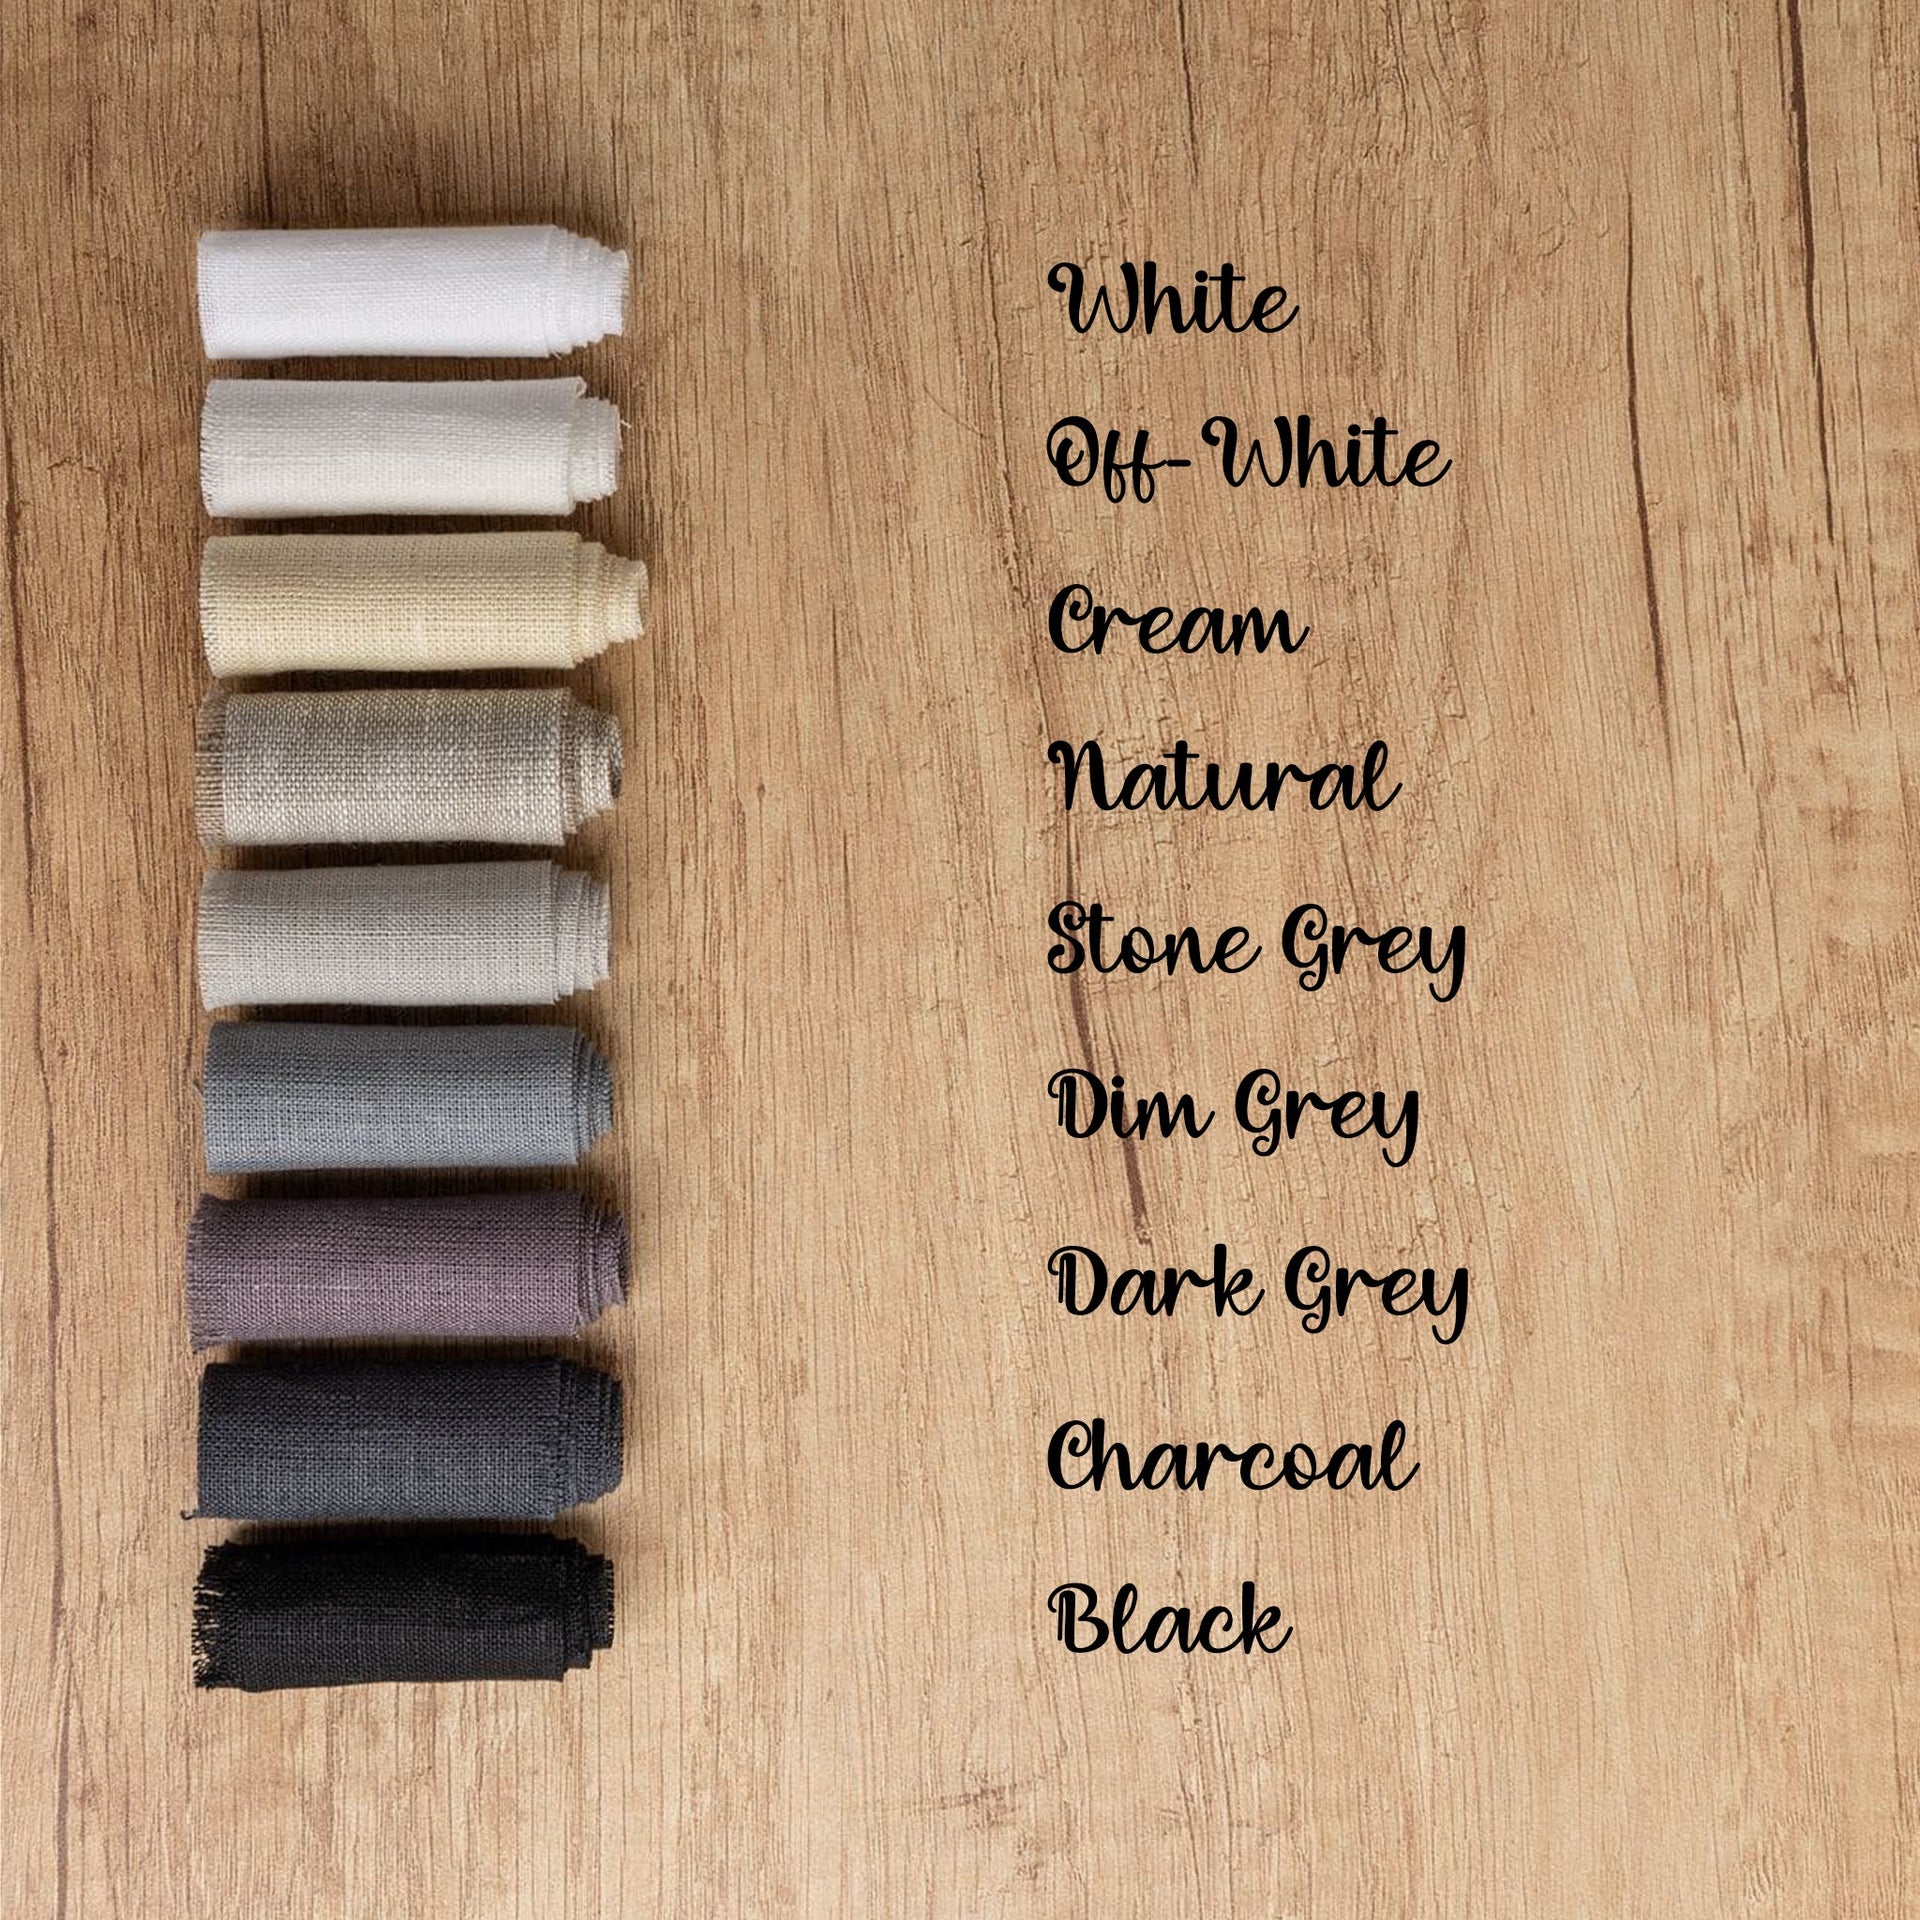 @ color:Stone Grey, color:Dim Grey, color:Black, color:Dark Grey, color:White, color:Off-White, color: Cream, color:Natural, color:Dark Grey, color:Charcoal